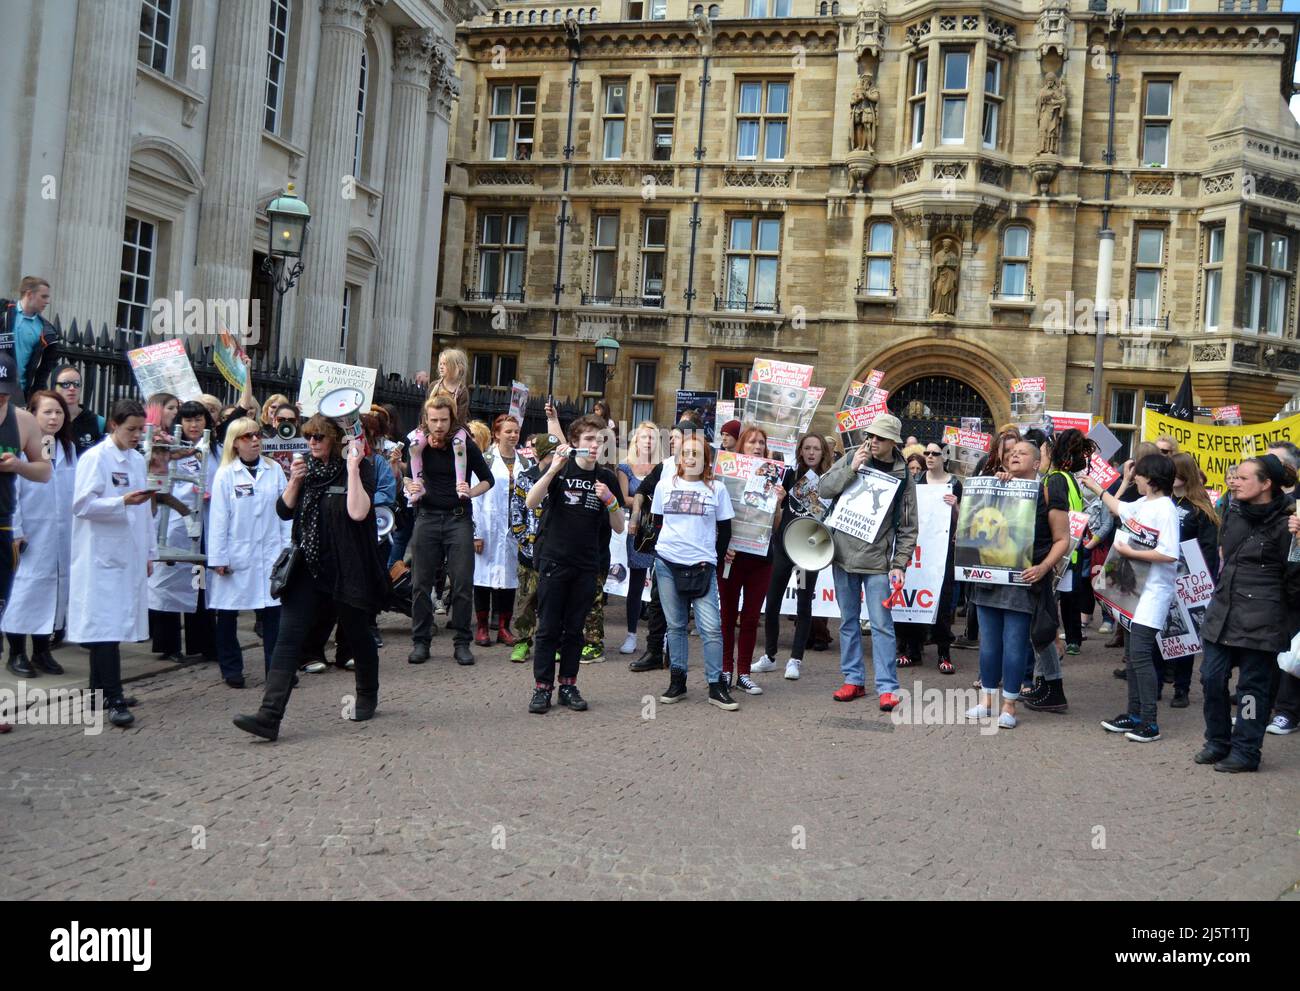 Giornata mondiale degli animali nei Laboratories, Cambridge, UK, Aprile 25th 2015 - attivisti per i diritti degli animali che protestano nei pressi dell'Università di Cambridge Foto Stock